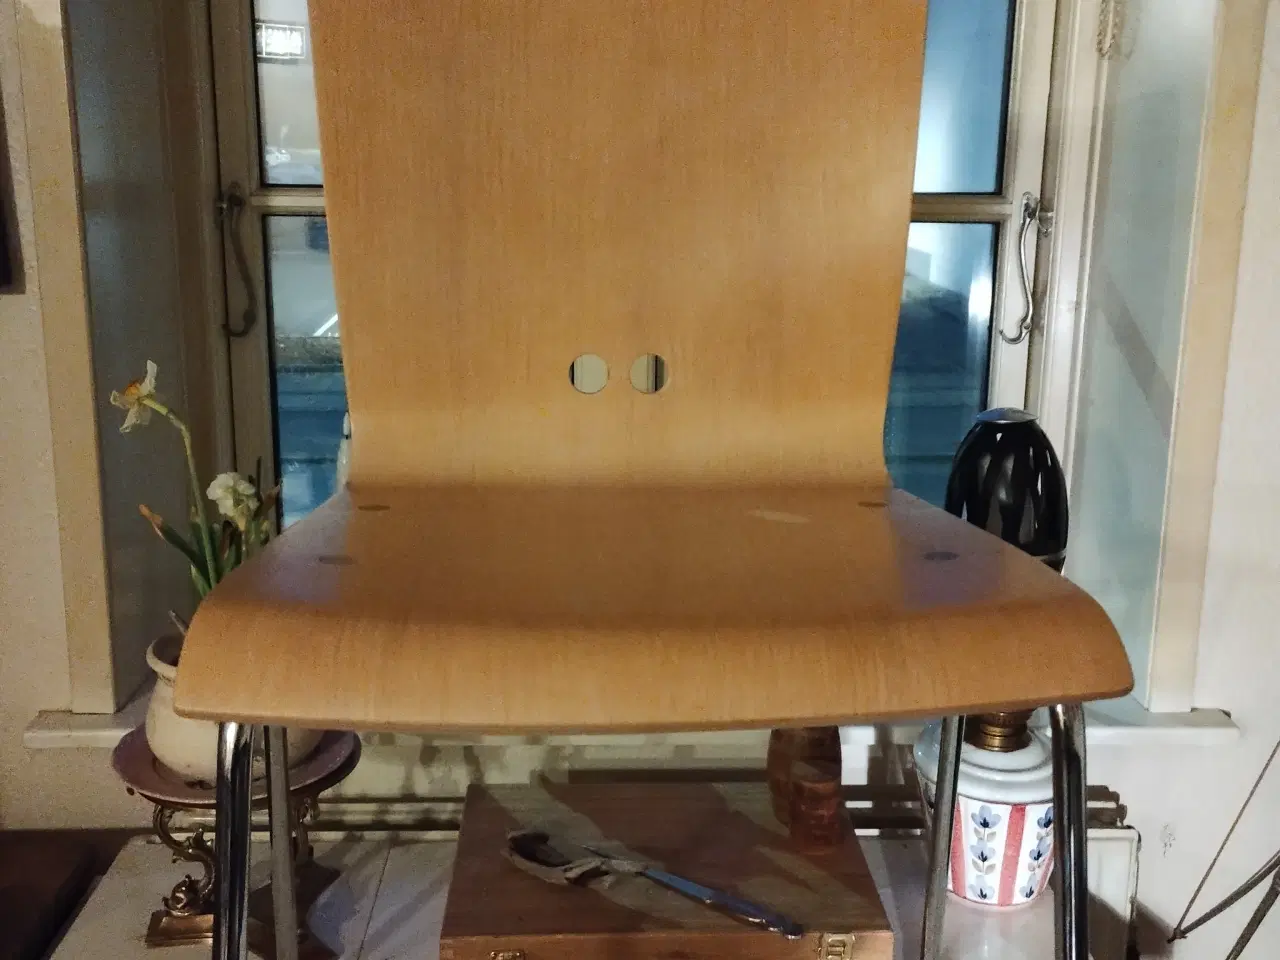 Billede 1 - Rumas kantine stol made in Denmark.